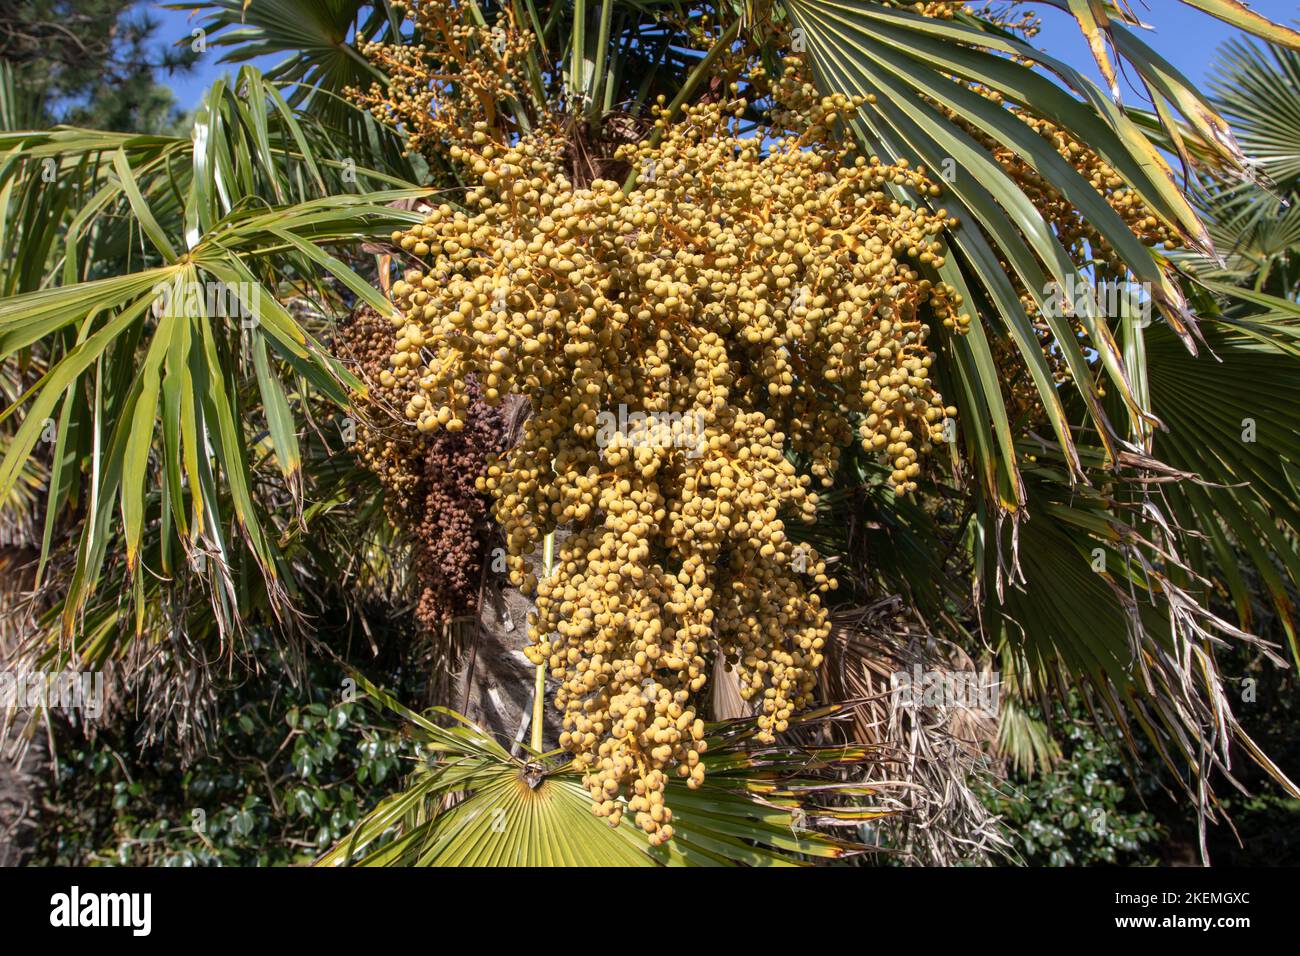 Trachycarpus fortunei, la palma del molino de viento chino, la palma del molino de viento o la planta de la palma de Chusan con reniforme amarillo o frutos de drupa en forma de riñón Foto de stock